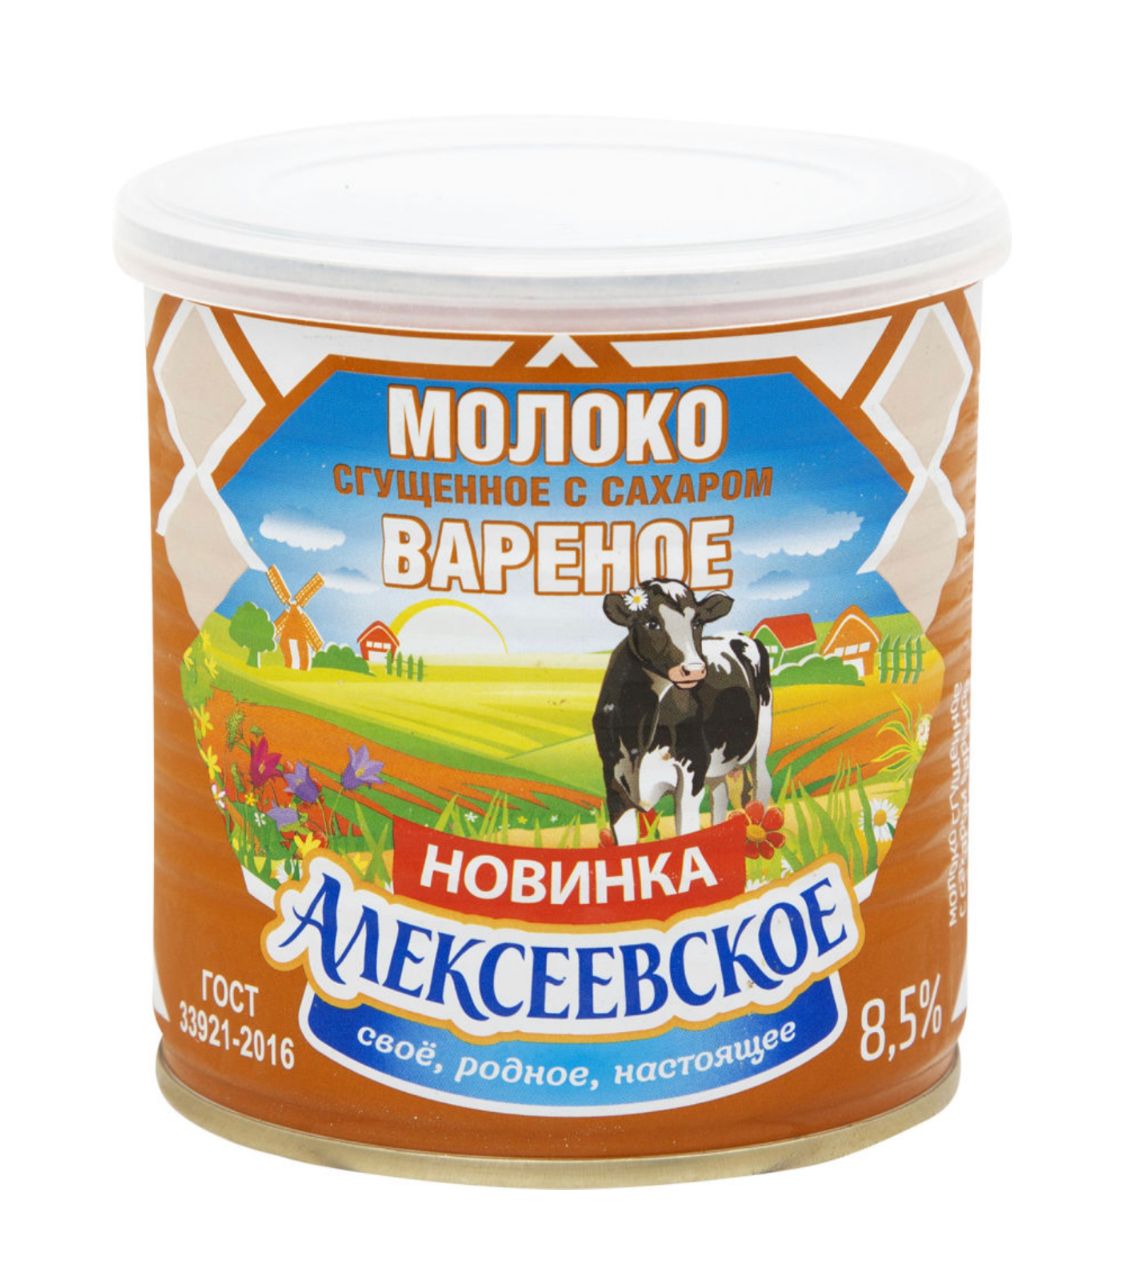 Сгущенное молоко краткое содержание. Алексеевское молоко 360гр. Молоко сгущенное Алексеевское 8.5%. Сгущенное молоко Алексеевское вареное с сахаром. Молоко сгущенное вареное Алексеевское 360г.